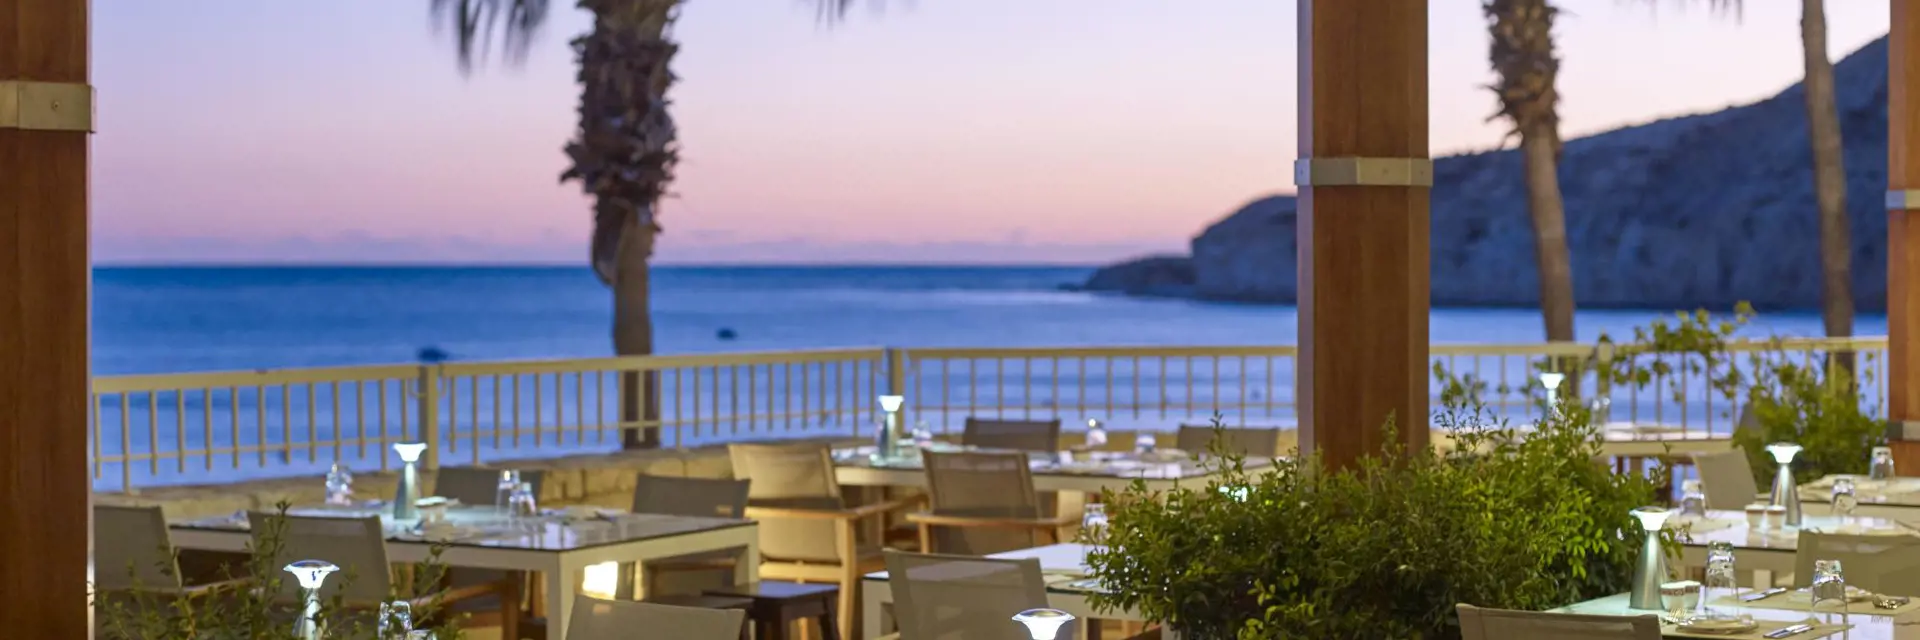 columbia beach resort cyprus restaurant